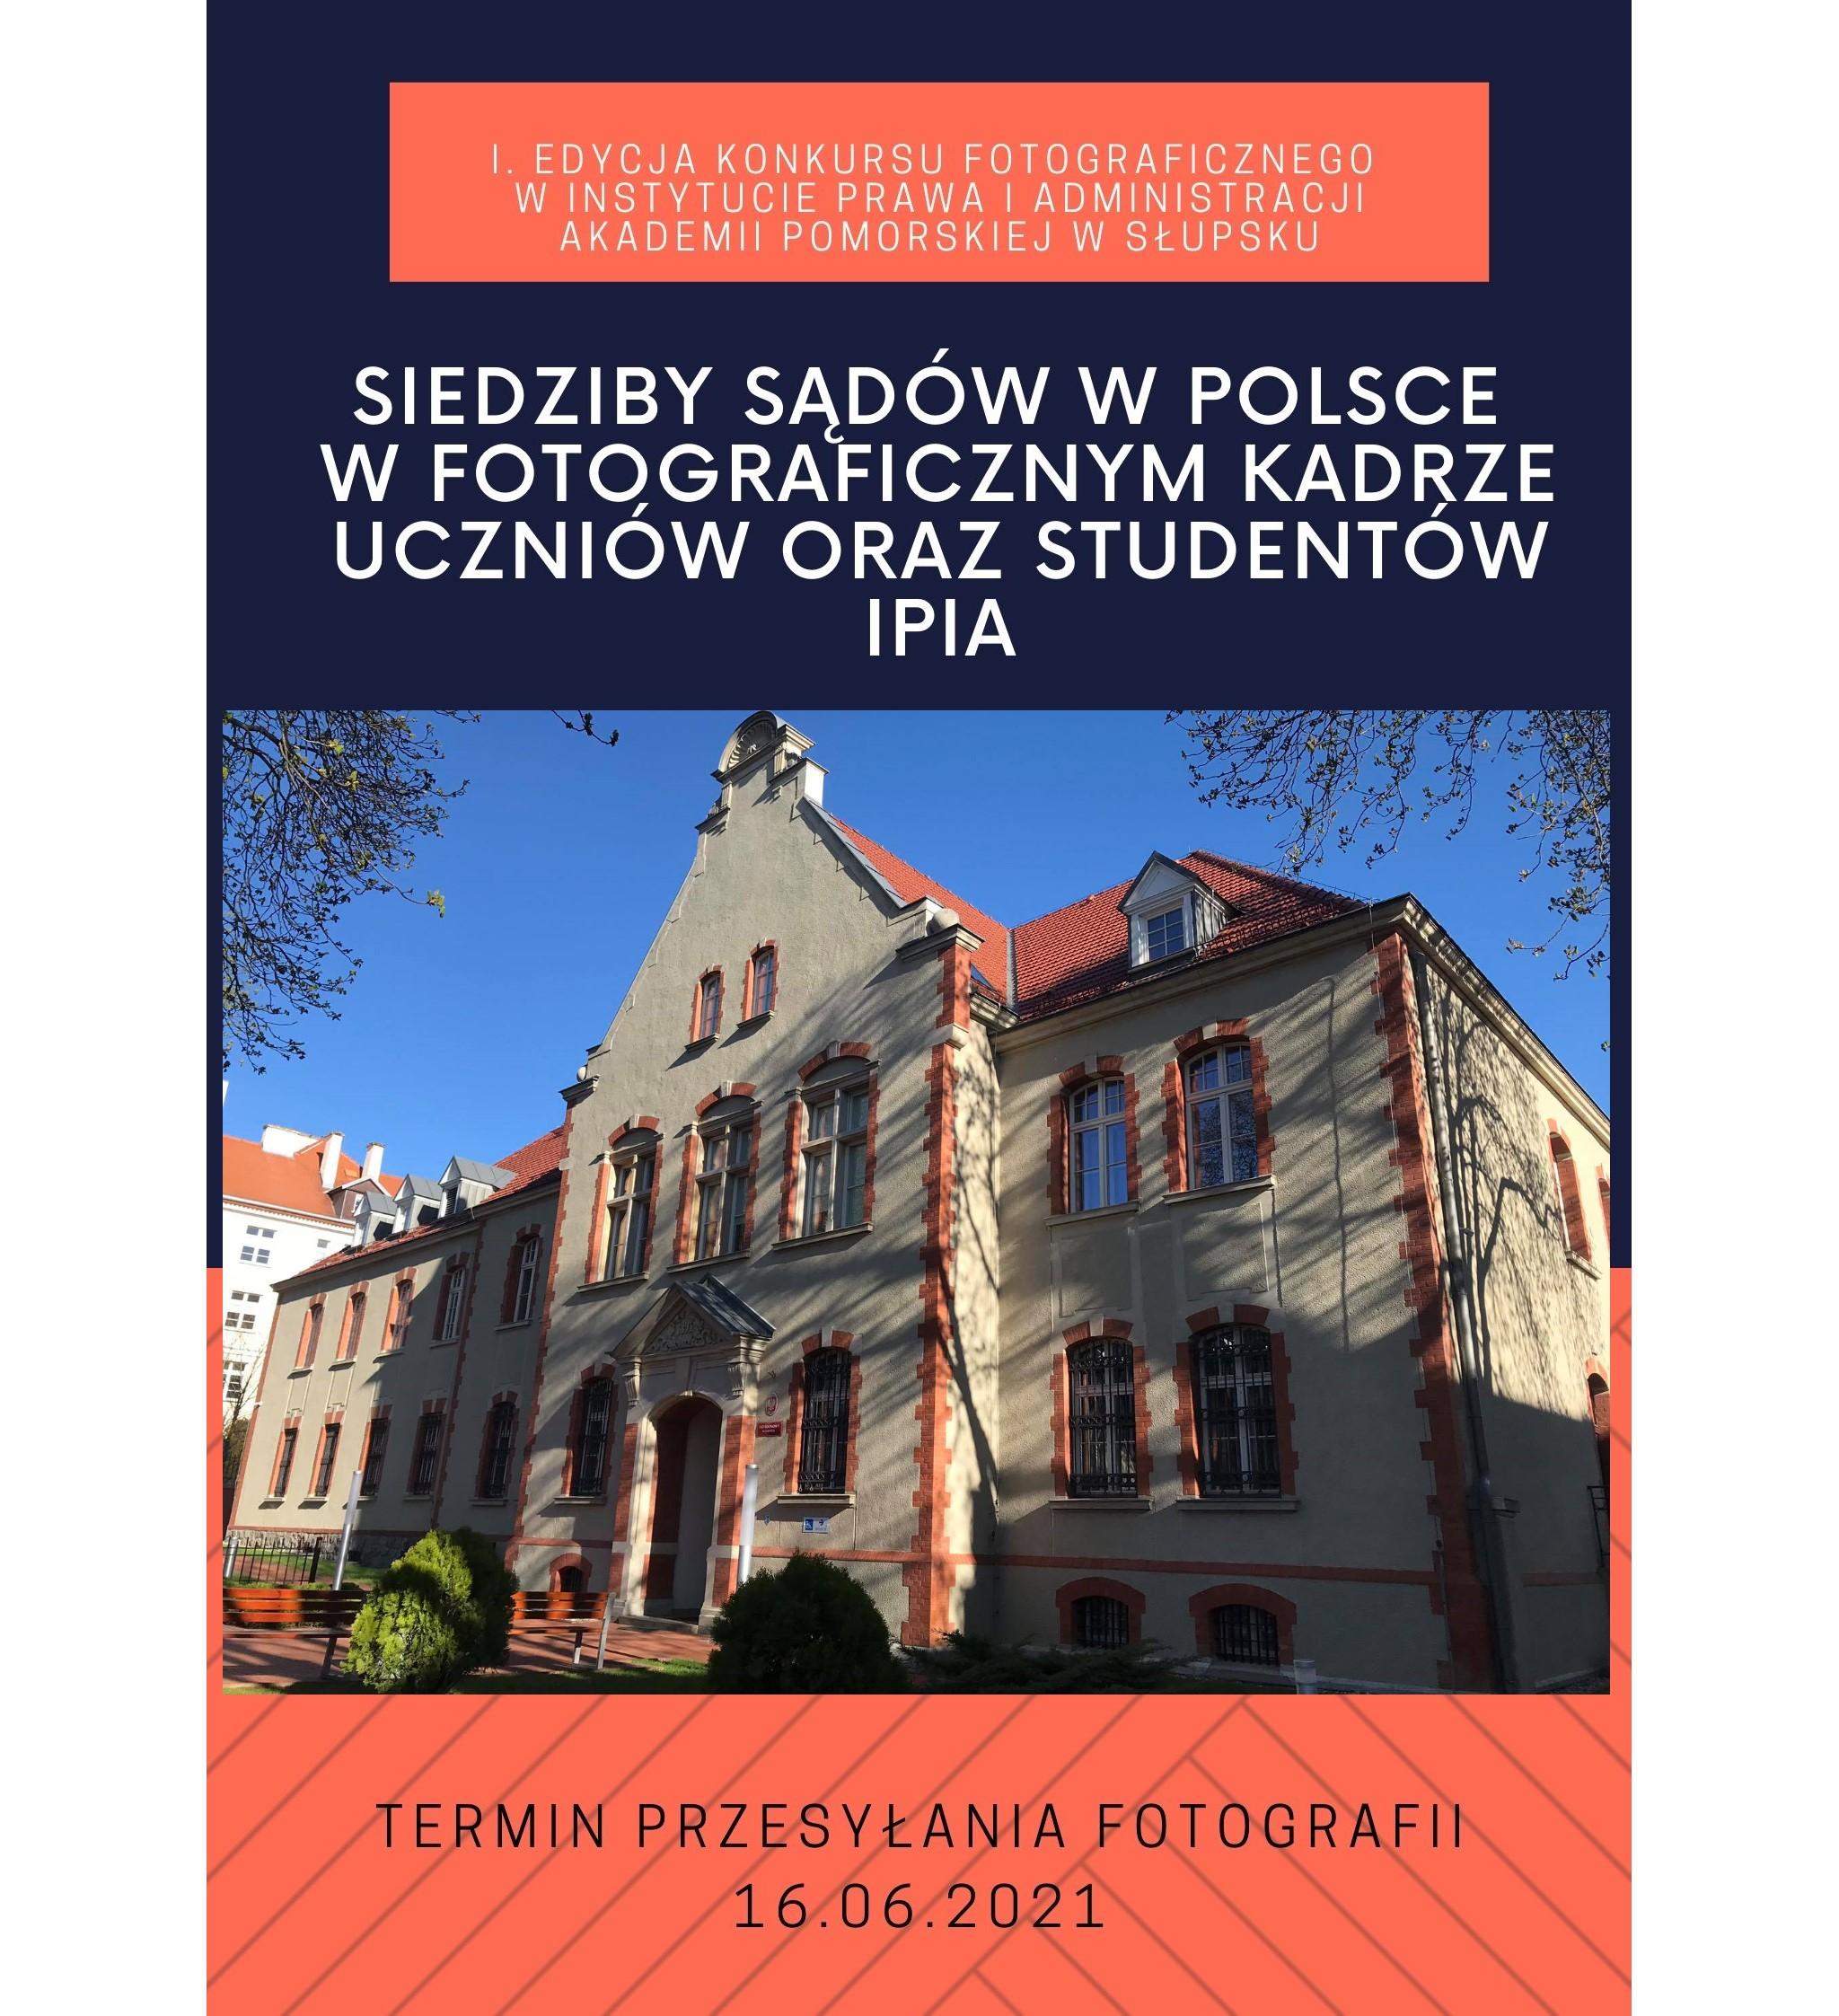 I. Edycja Konkursu Fotograficznego w Instytucie Prawa i Administracji – 2021